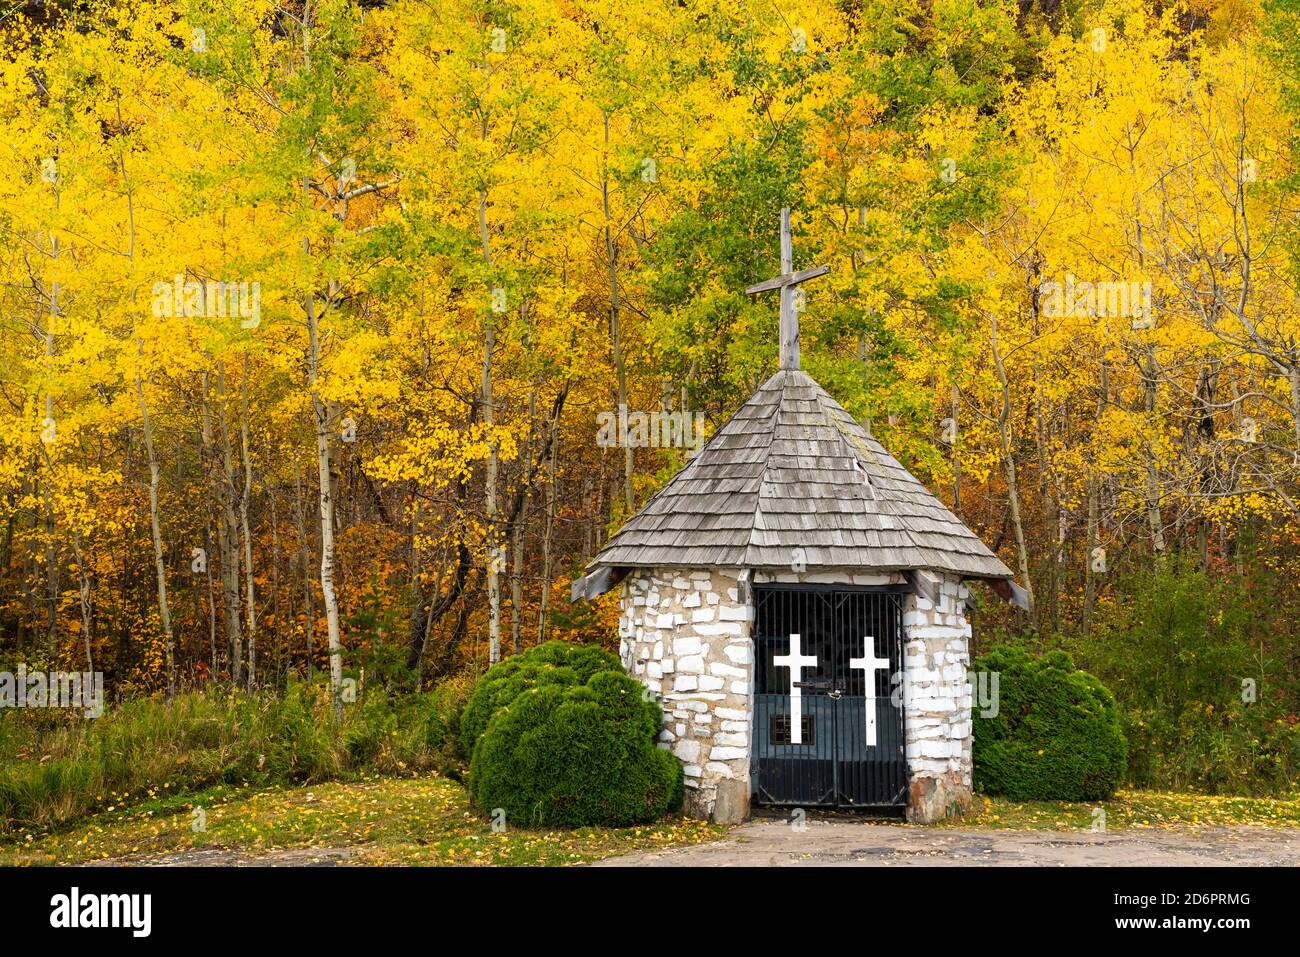 Petite chapelle et feuillage d'automne au point d'observation de Mount McKay Thunder Bay, Ontario, Canada. Banque D'Images